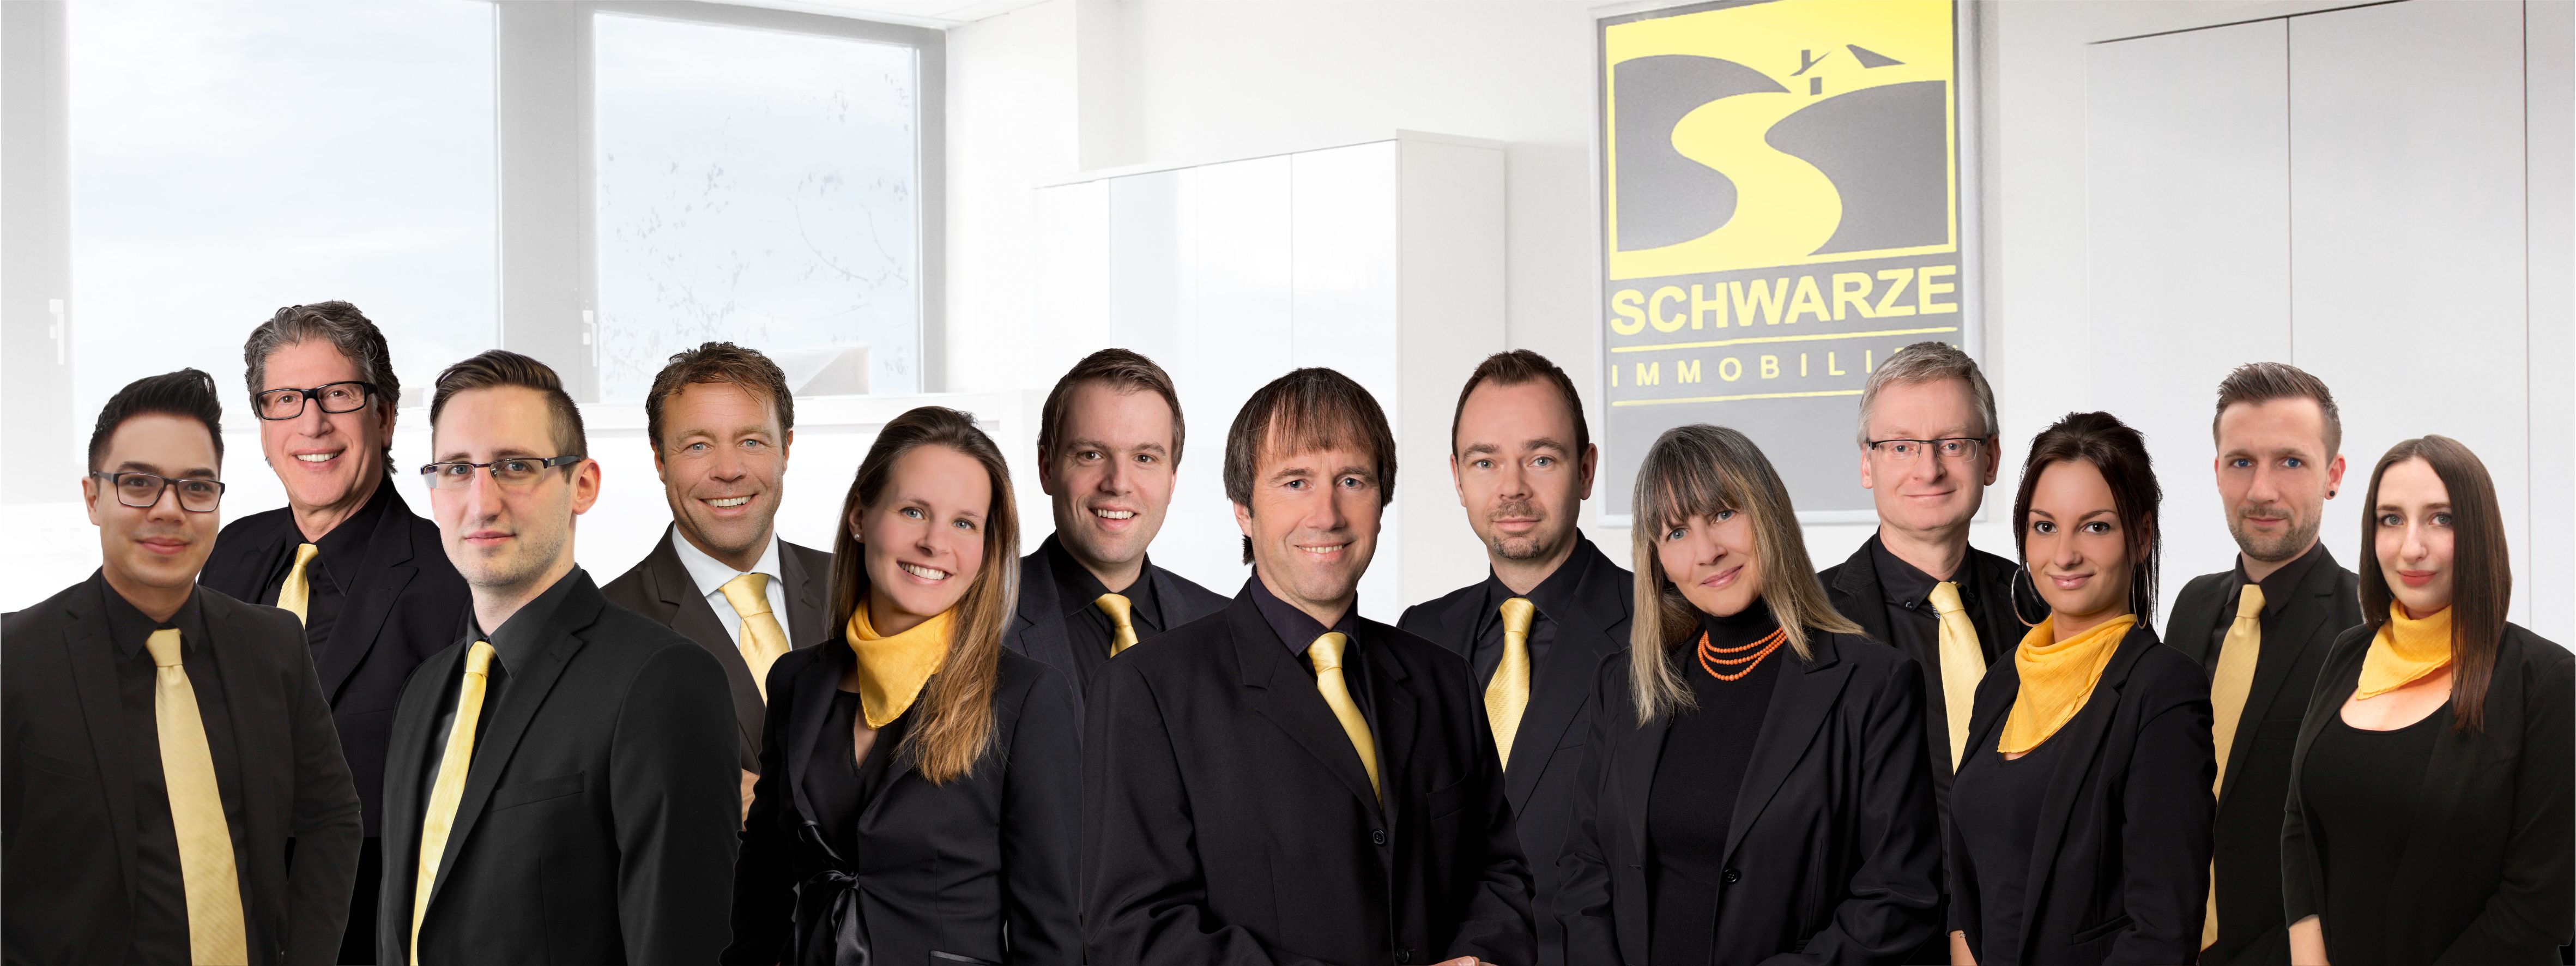 Schwarze Immobilien GmbH & Co.KG, Heinrich-Hertz-Str. 7 in Erkrath